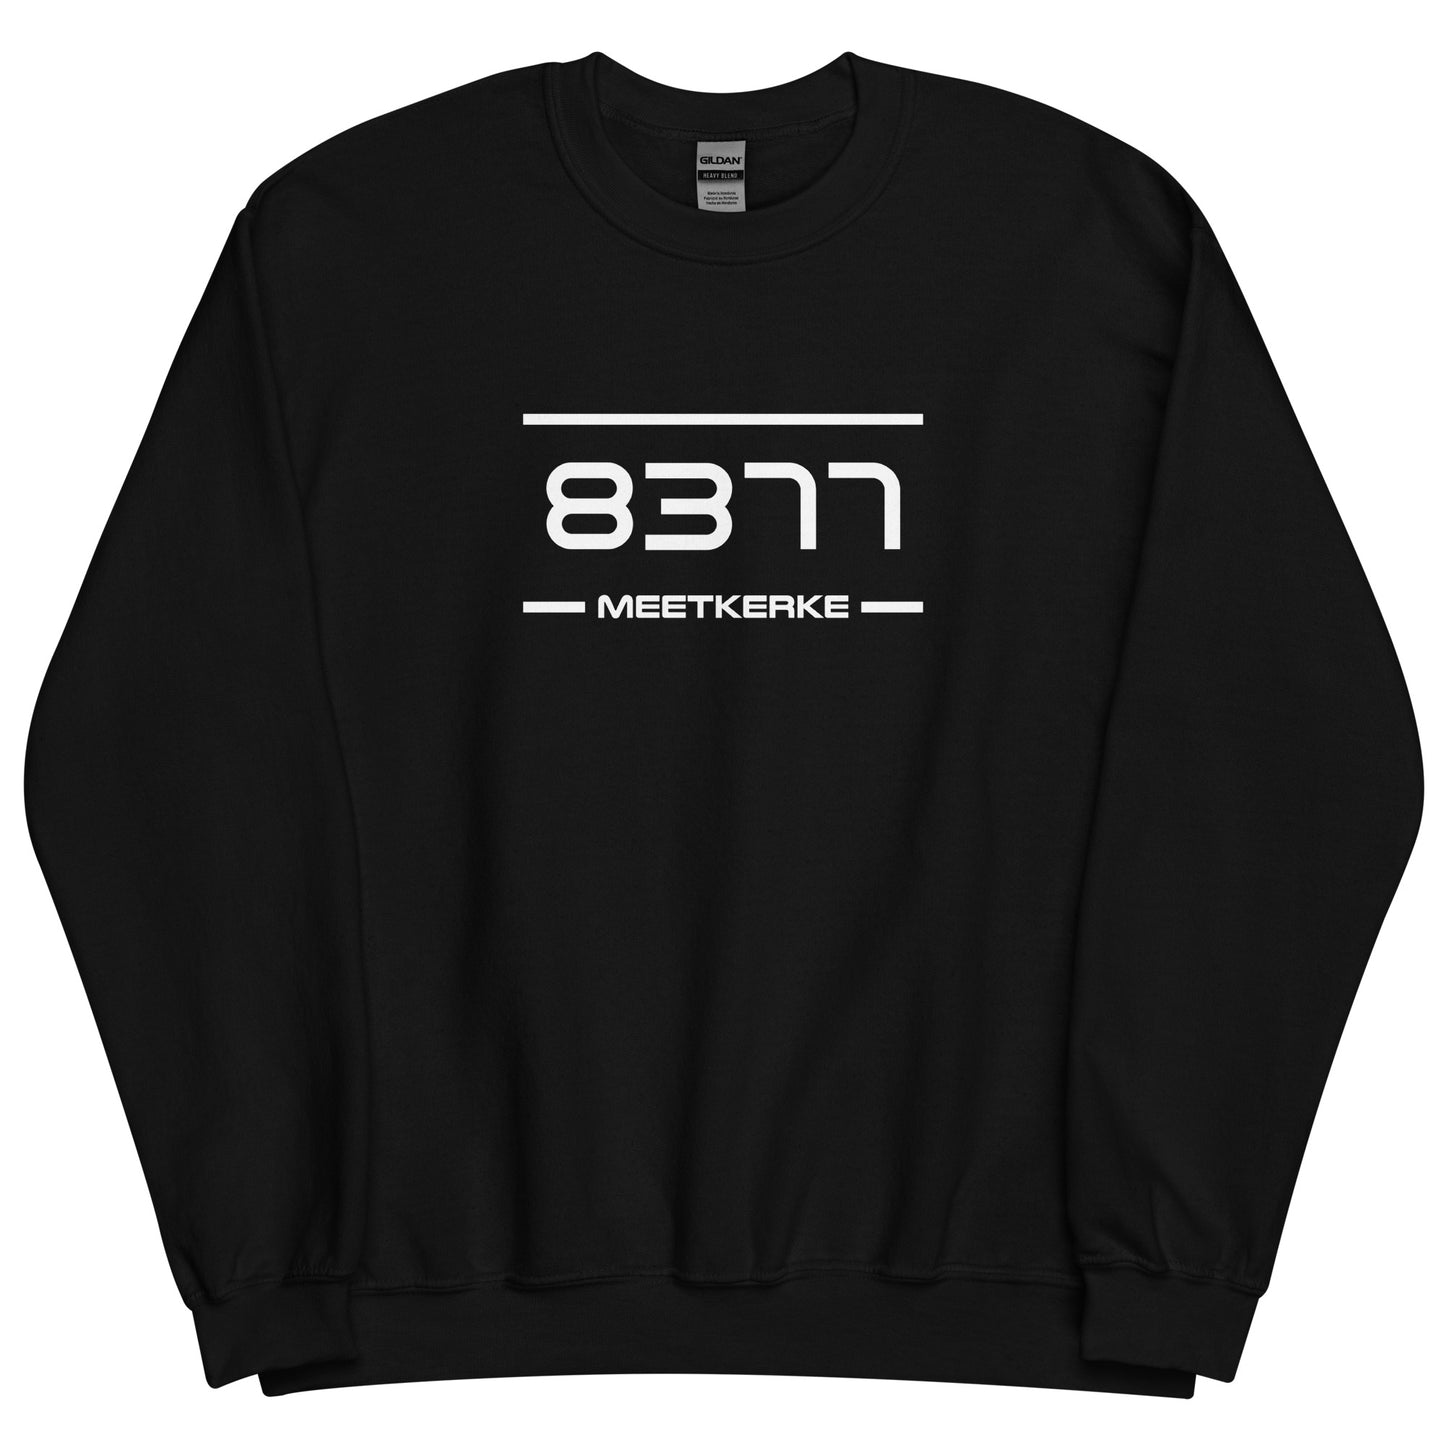 Sweater - 8377 - Meetkerke (M/V)